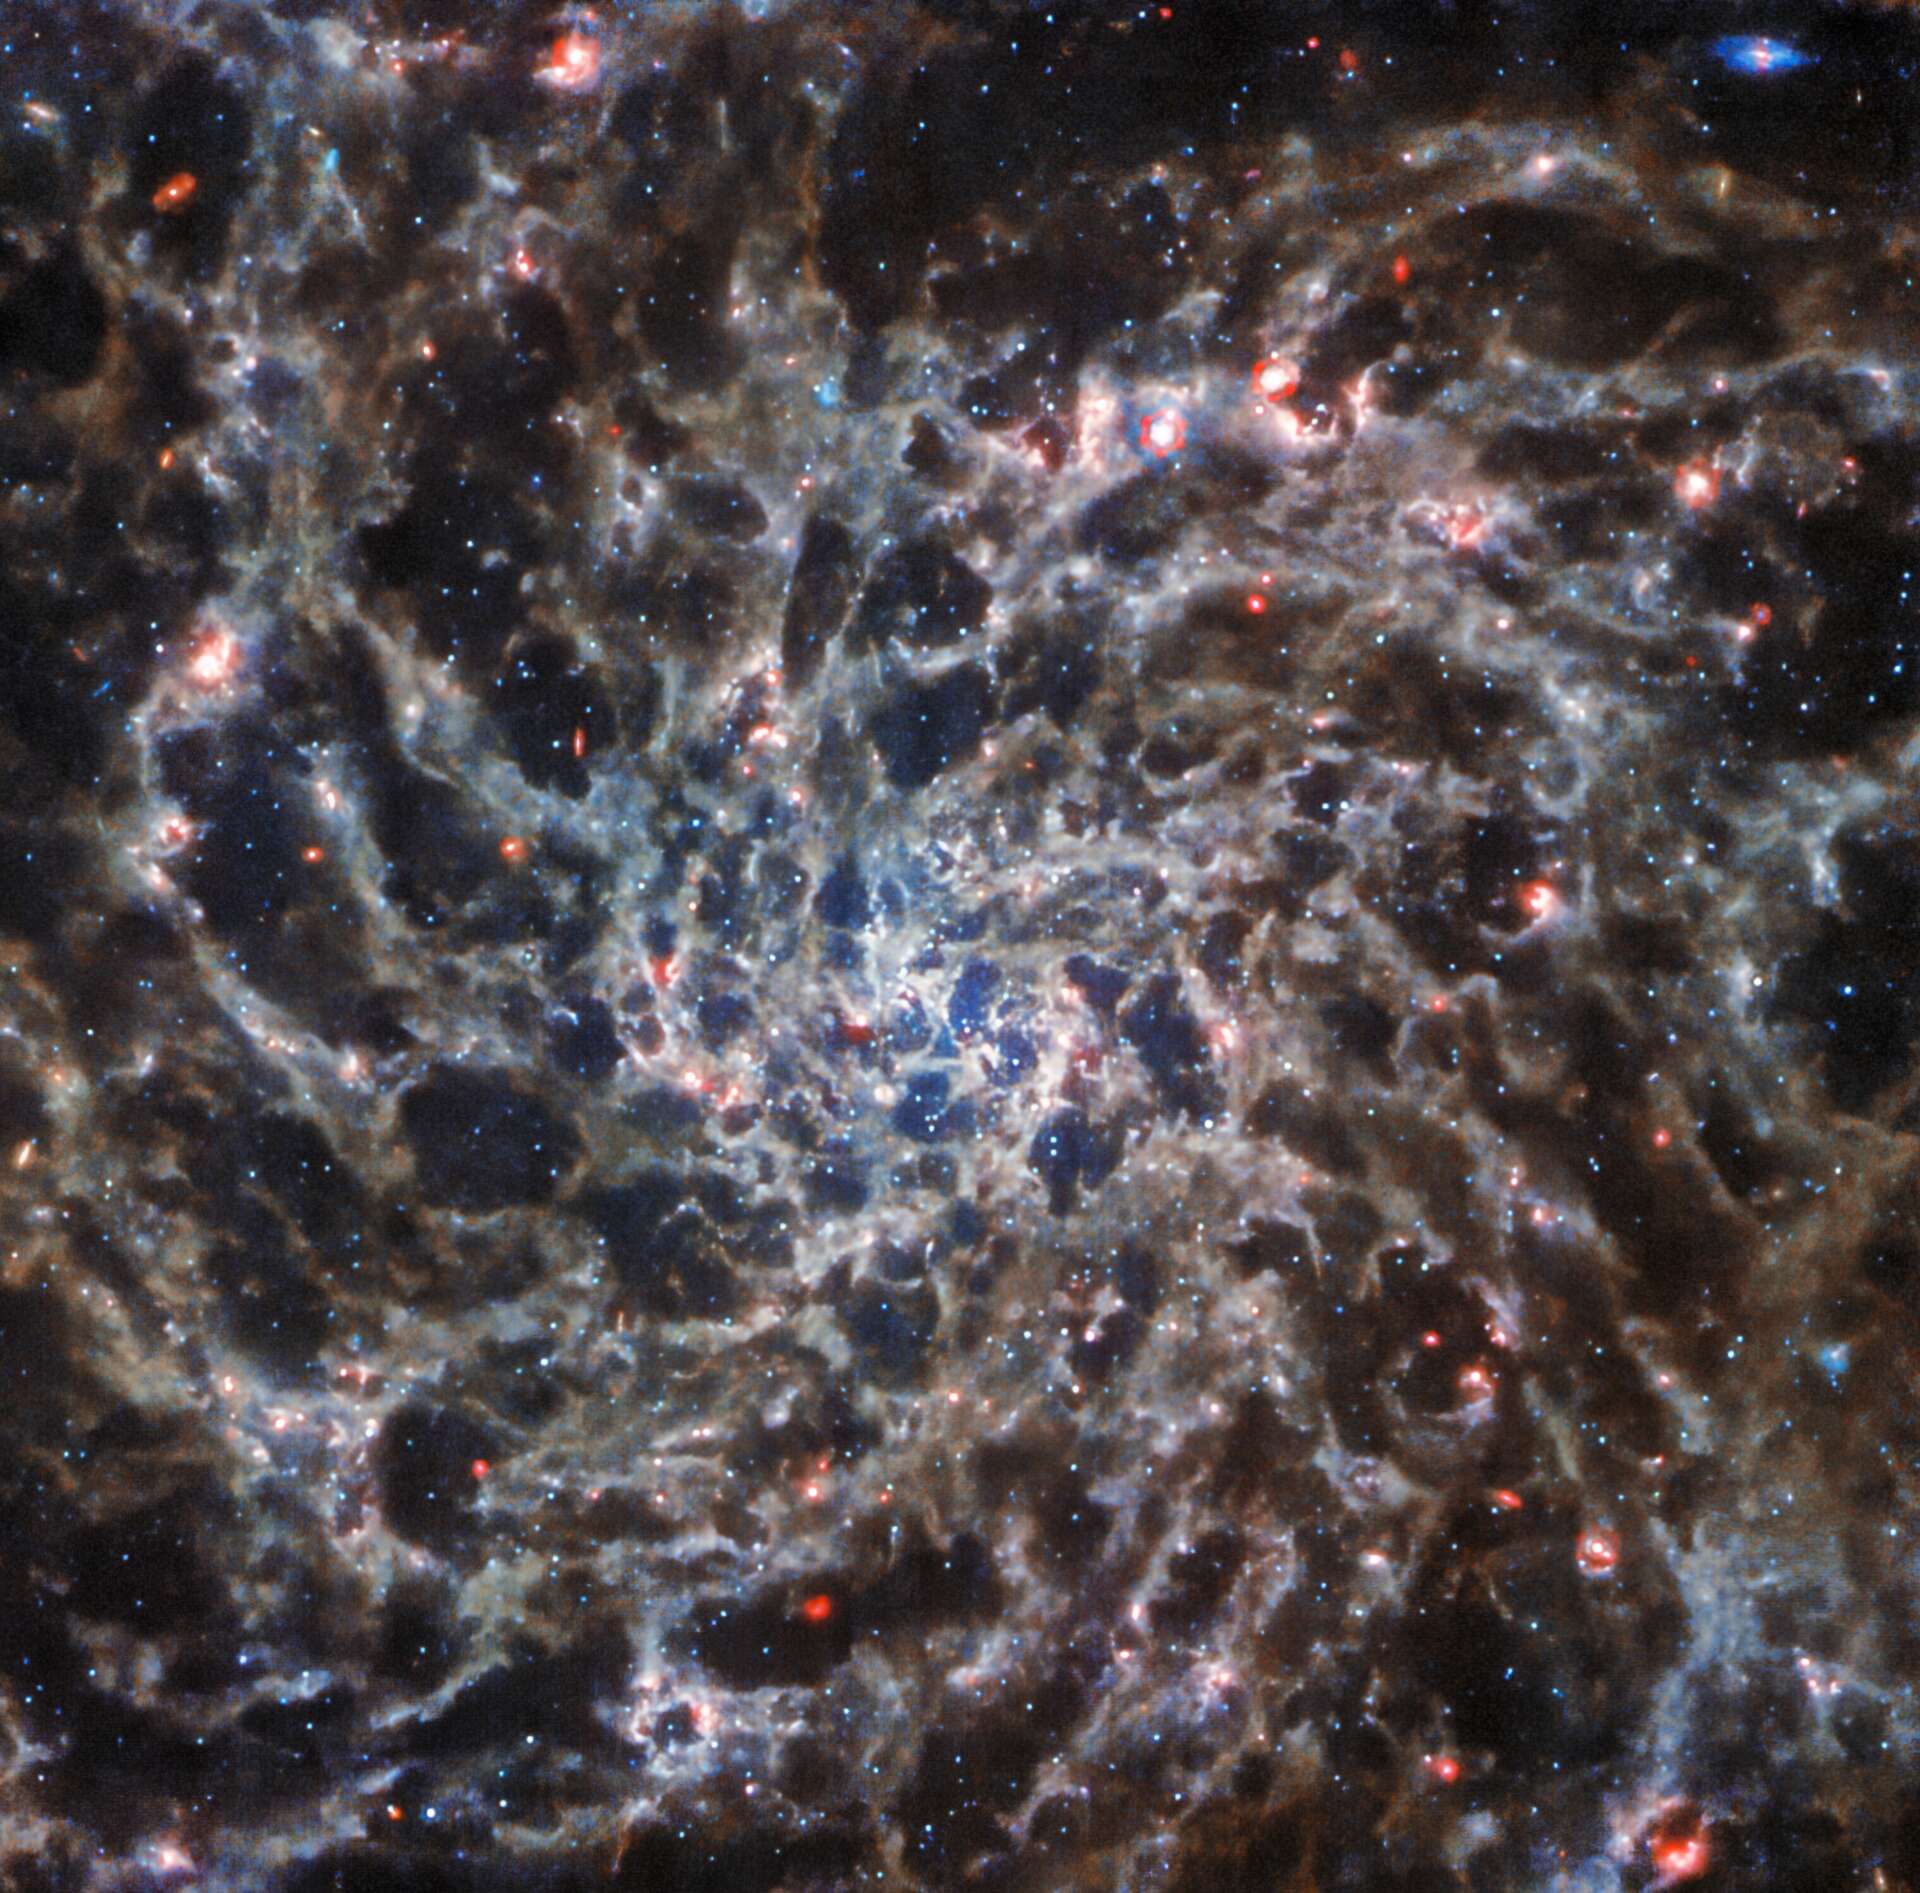 Splendide immagini dell’interno di una galassia a spirale scattate da James-Webb e Hubble